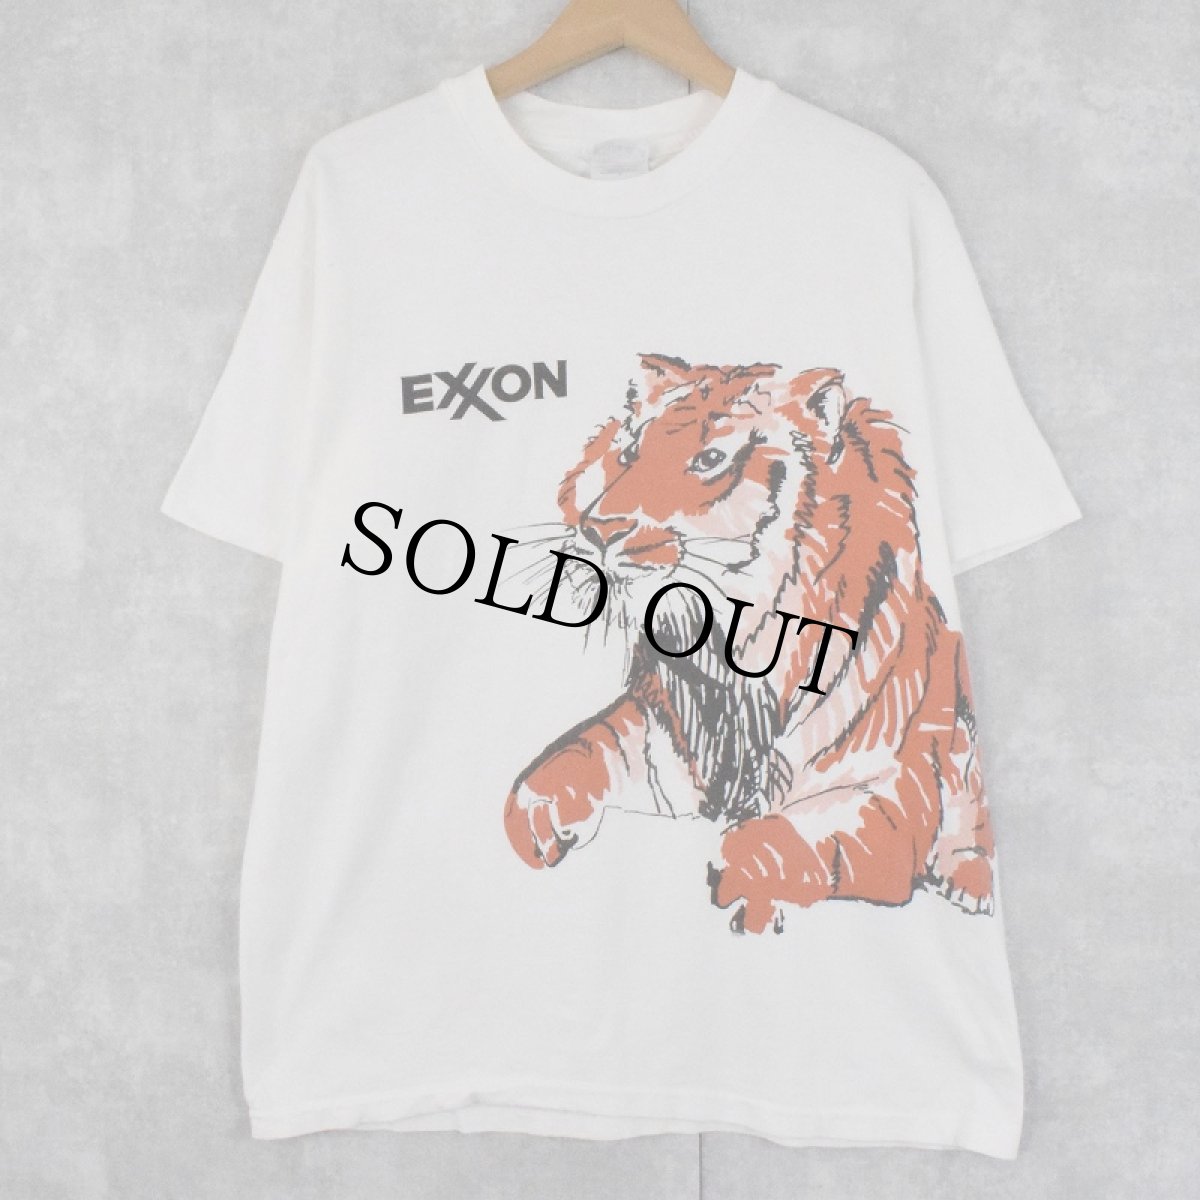 画像1: 90's ExxonMobil USA製 虎 巻プリント 企業Tシャツ L (1)